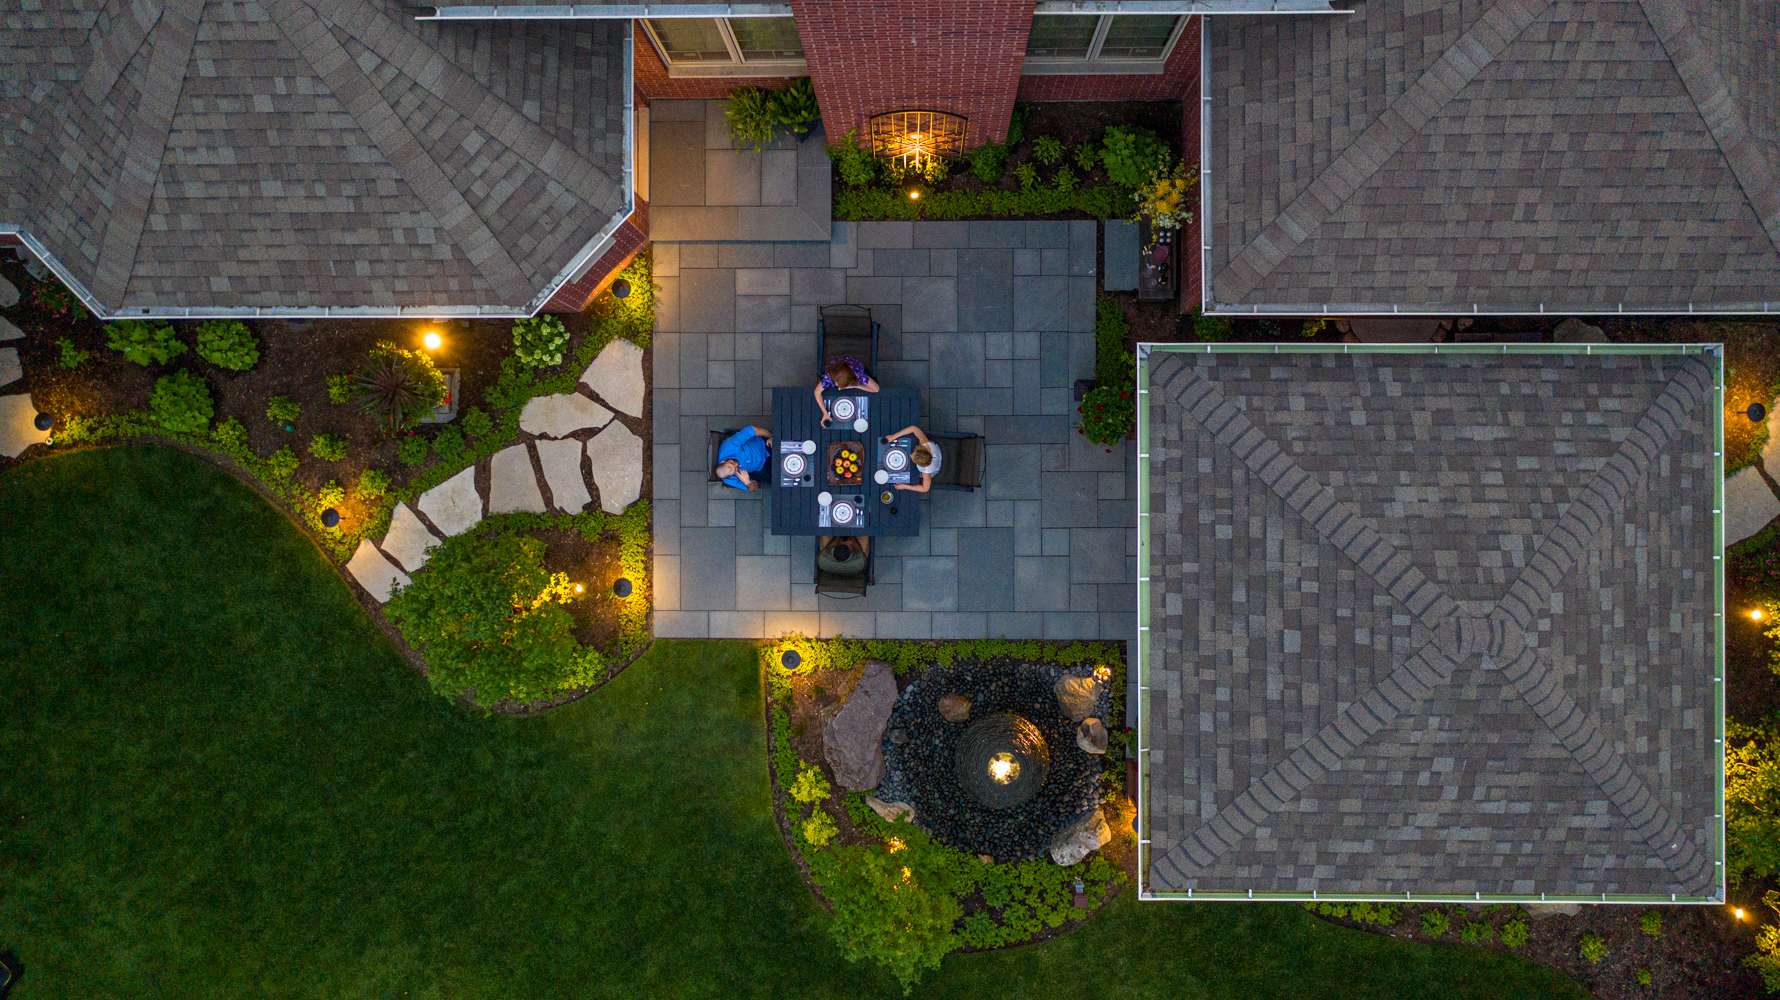 Aerial view of brick paver patio